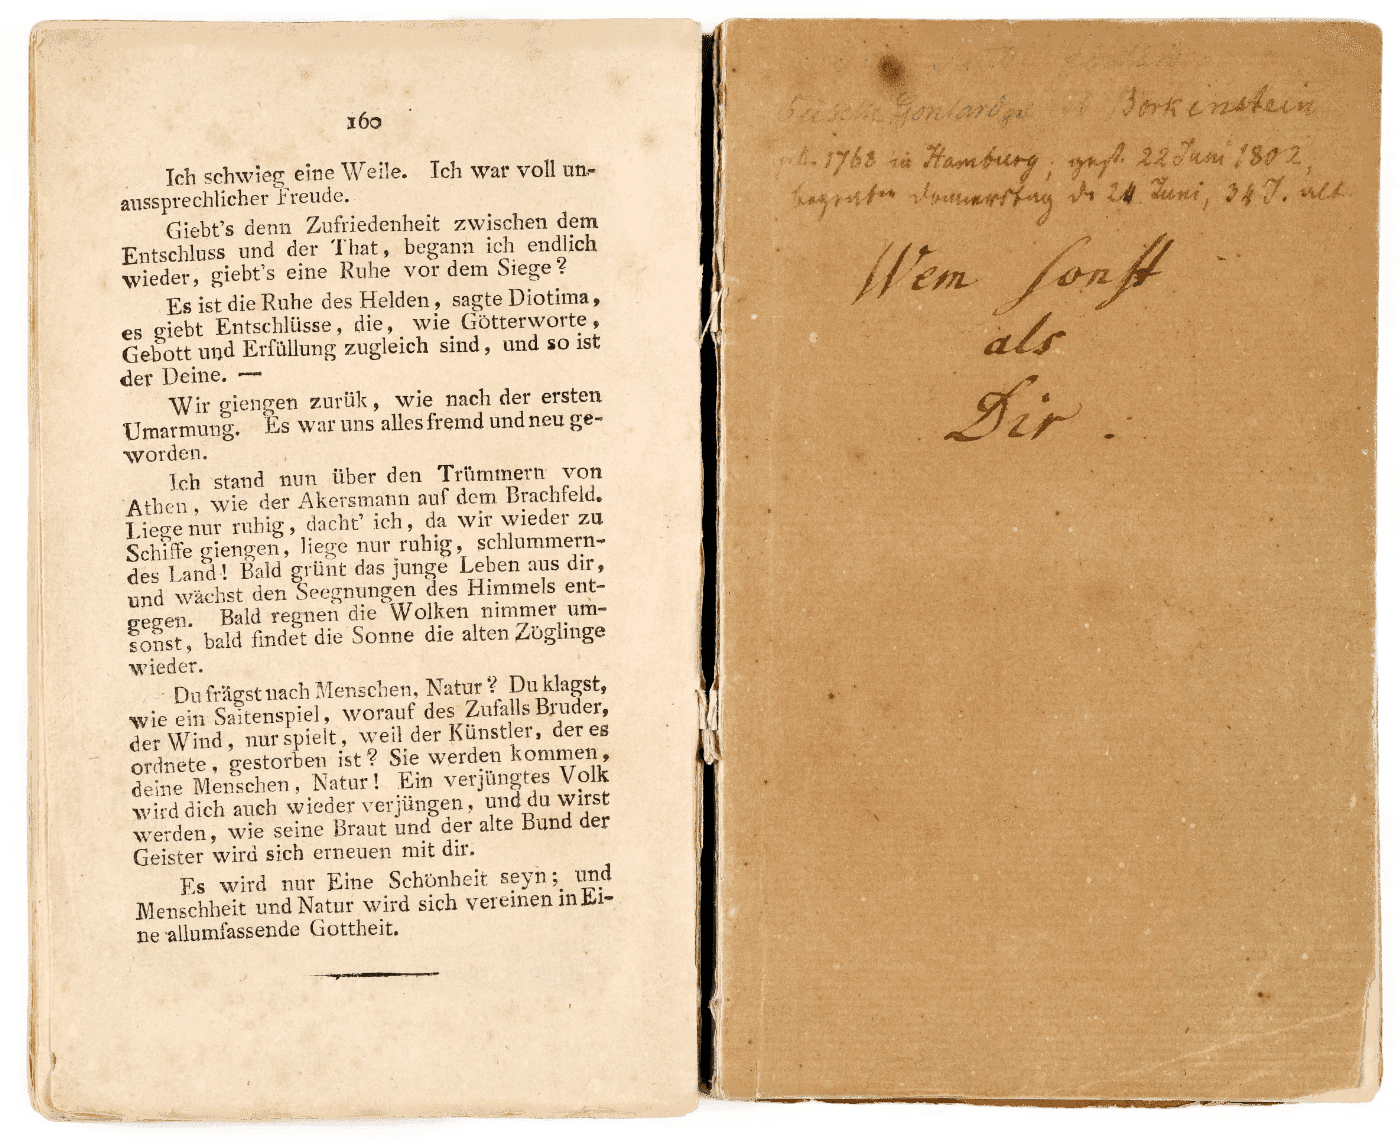 Aufgeschlagenes Buch. Die rechte Seite zeigt eine handschriftliche Widmung von Hölderlin: »Wem sonst als dir«